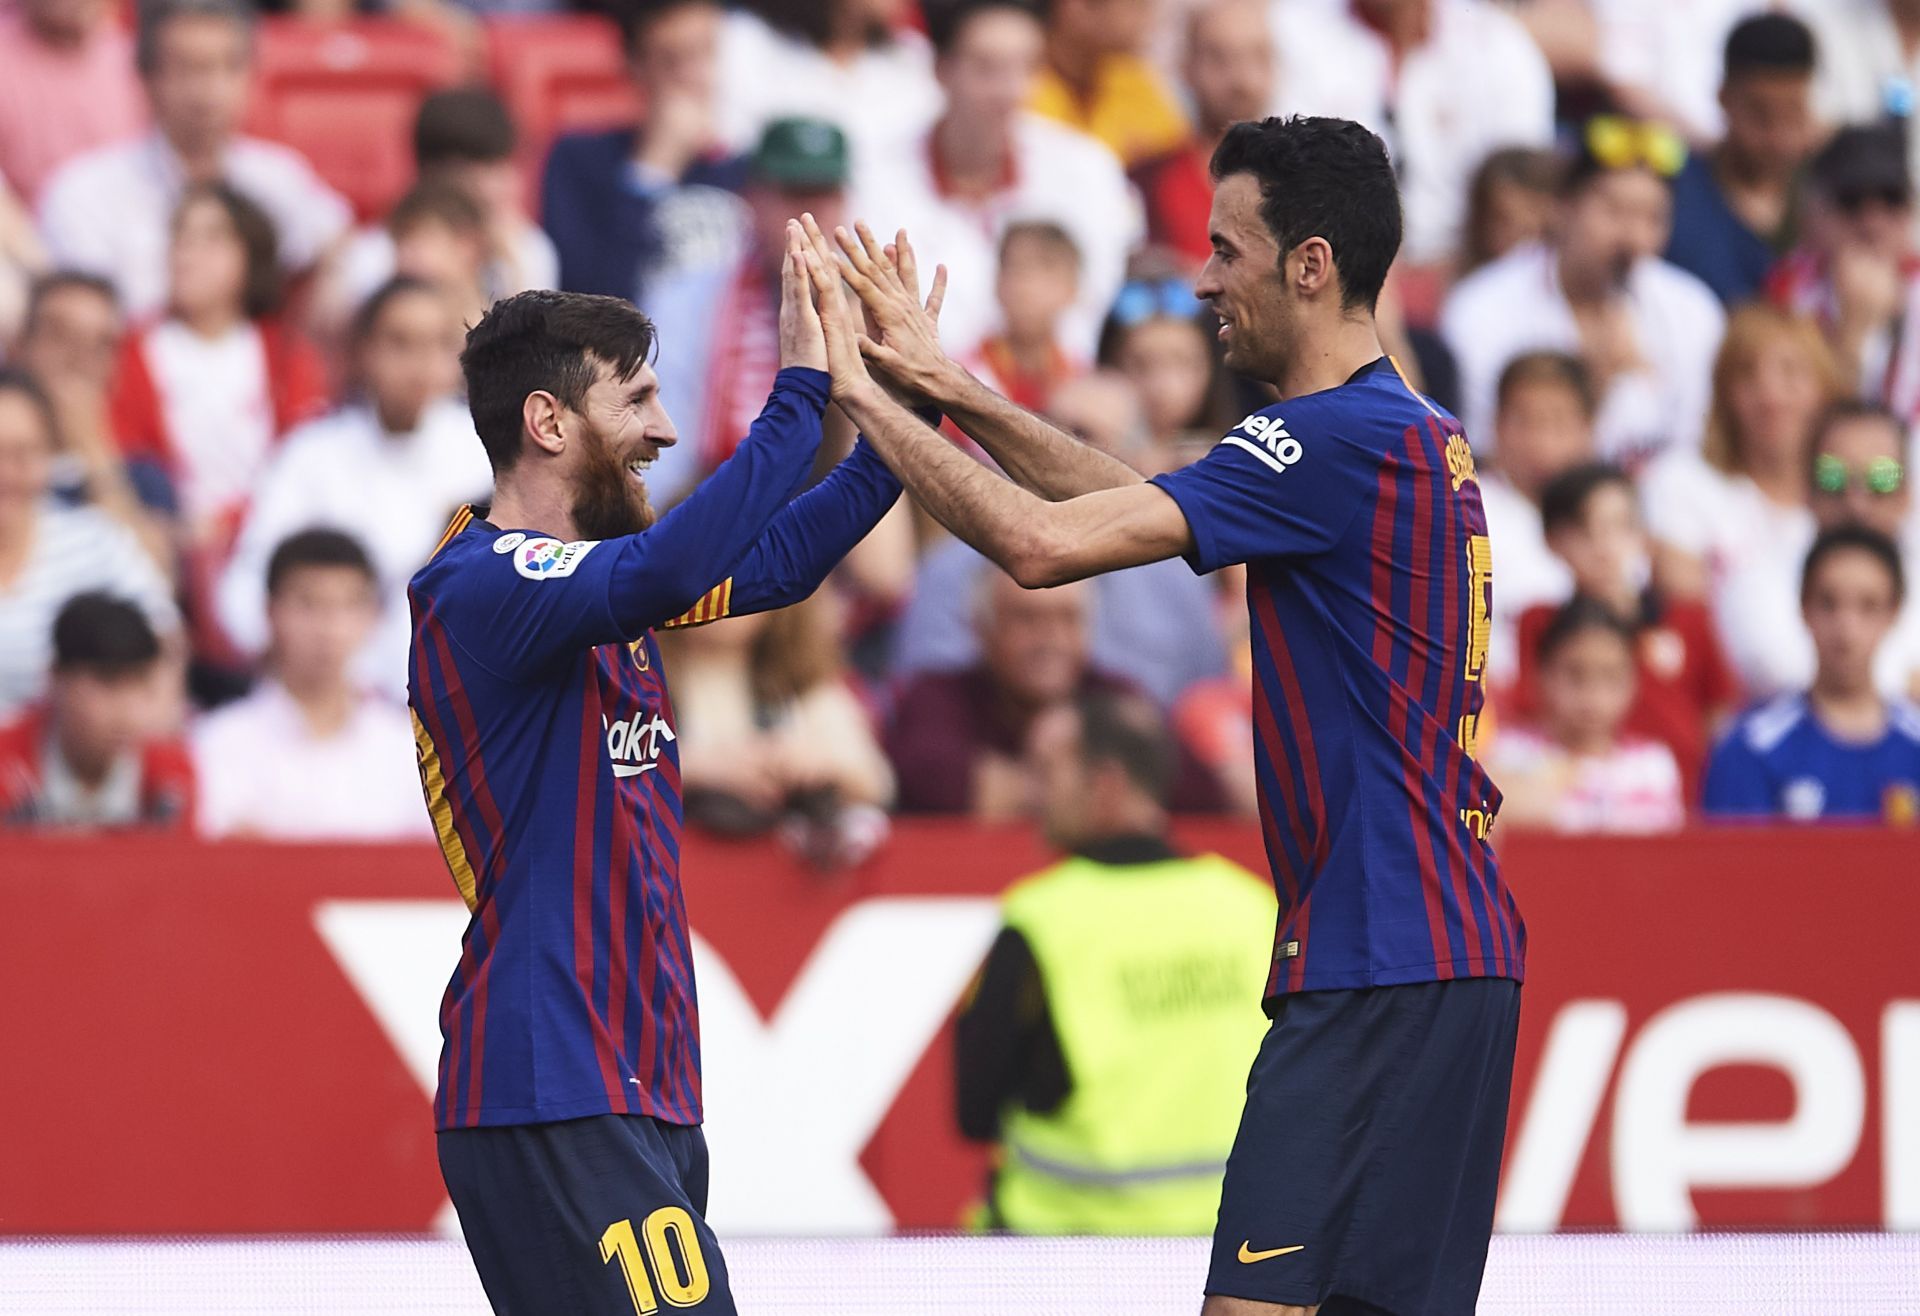 The Barcelona legends have reunited.